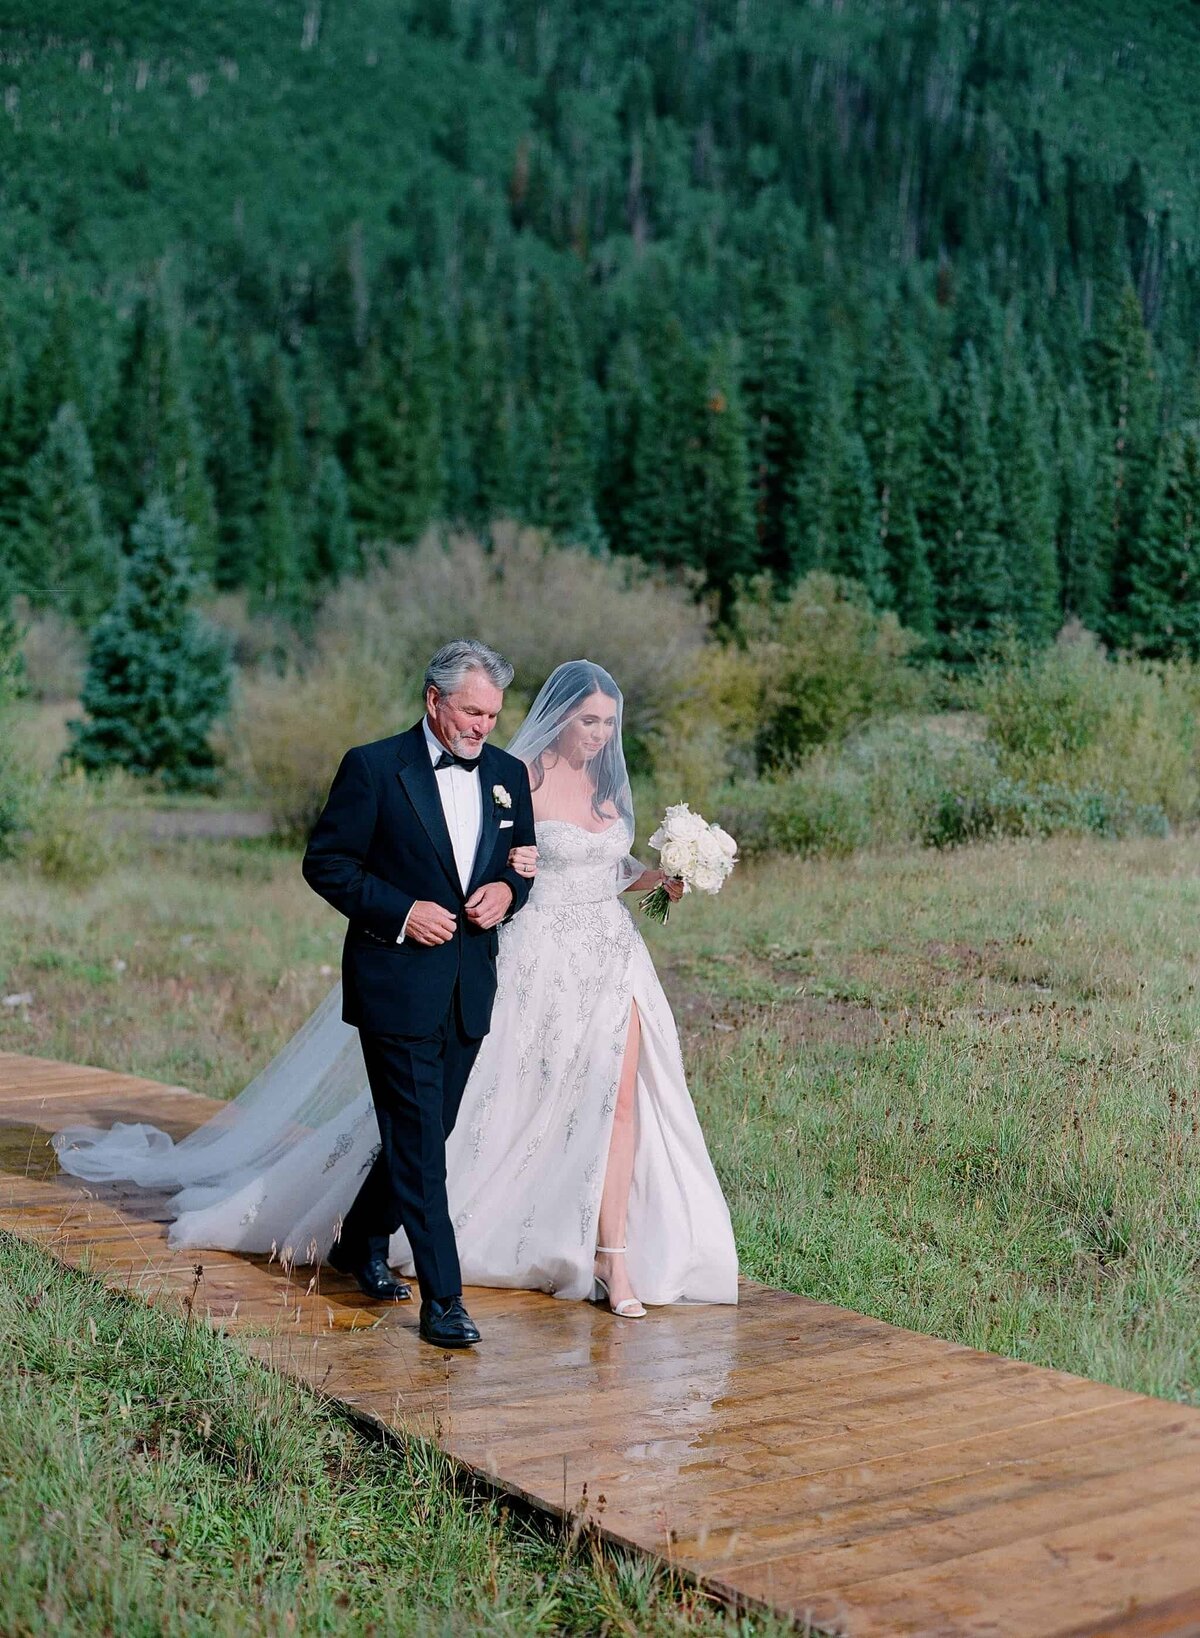 Bride walking down a custom aisle at an outdoor Colorado wedding venue